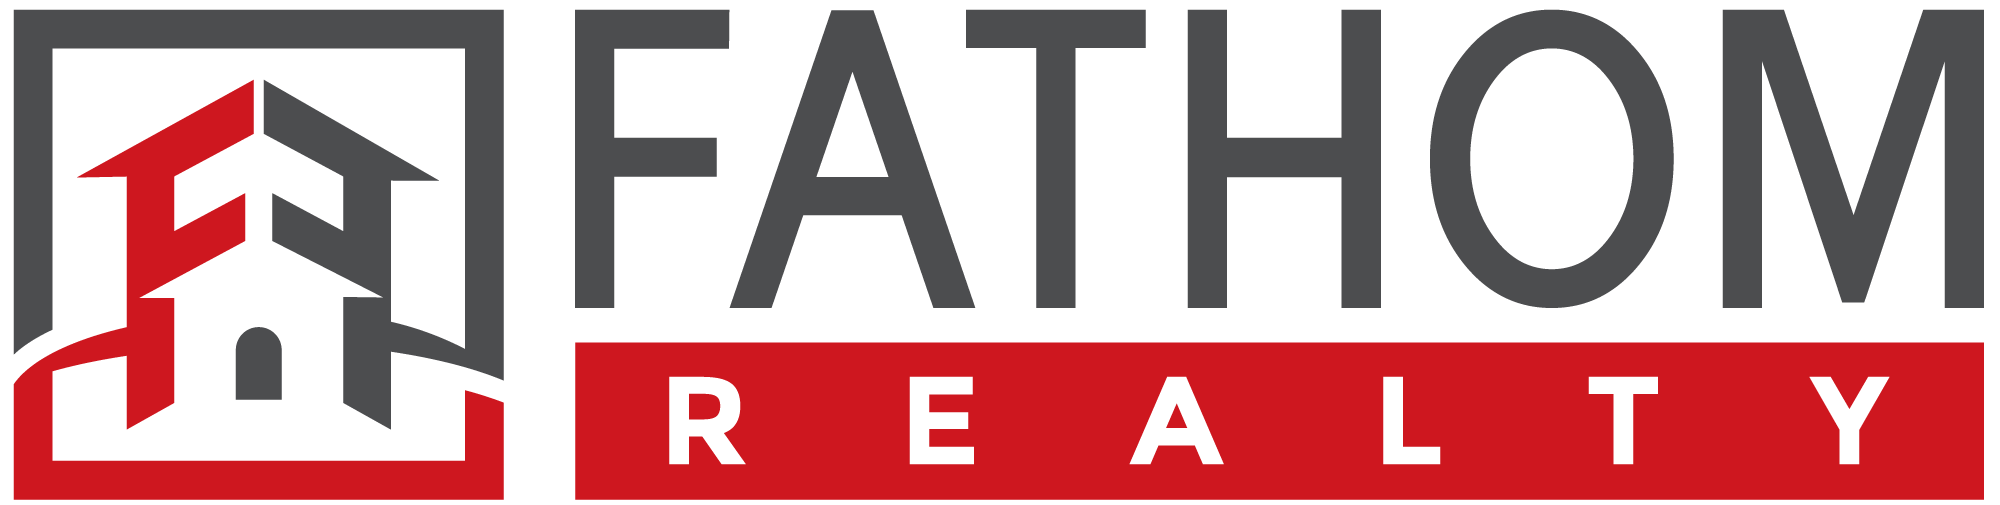 Fathom Realty Logo